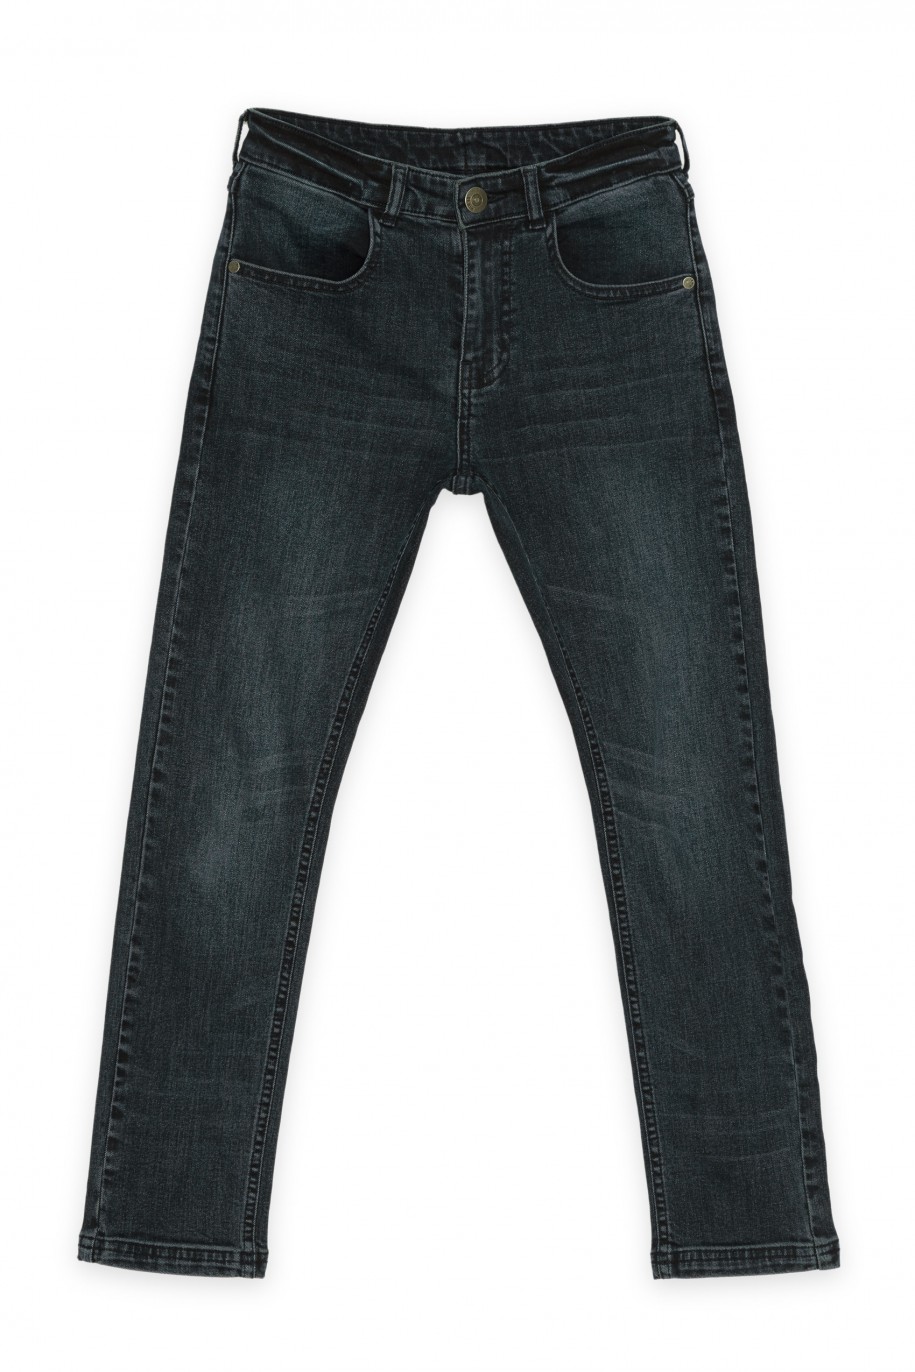 Granatowe klasyczne jeansy SLIM - 43777